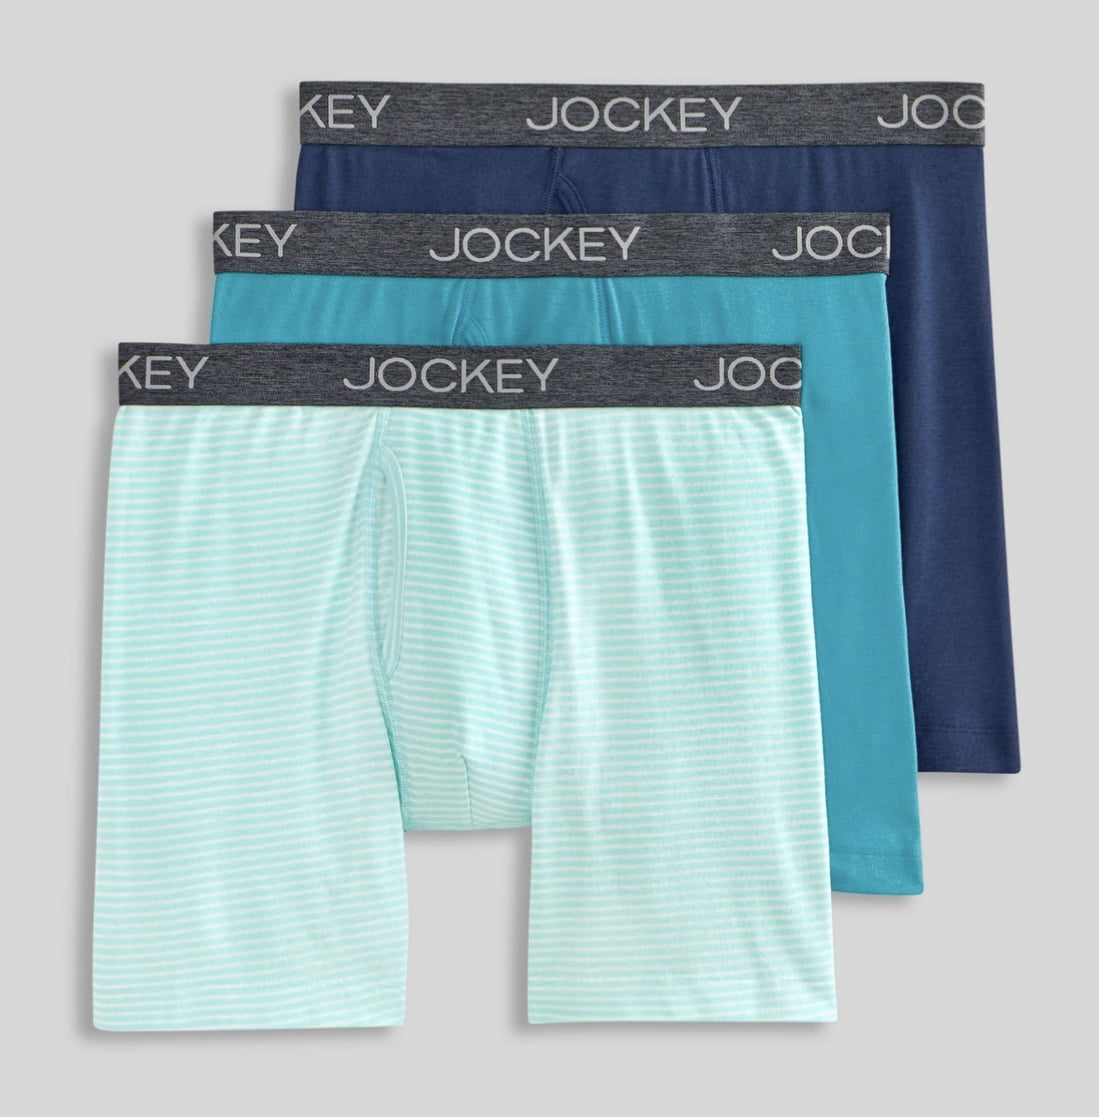 Jockey Generation™ Men's Stay New Boxer Briefs 3pk, Multicolor, Medium 